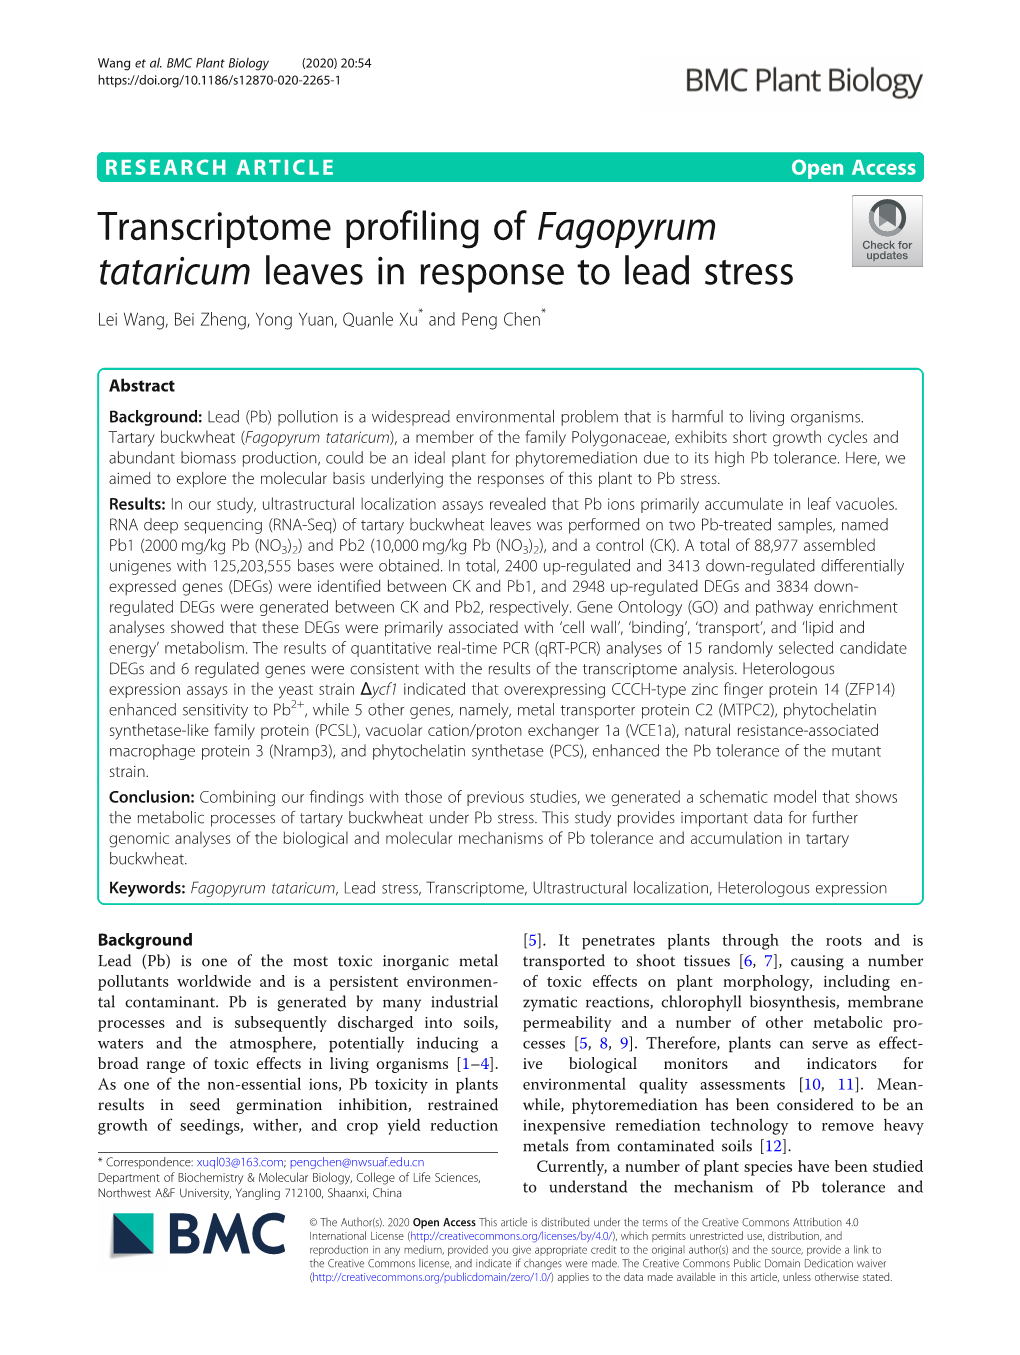 Transcriptome Profiling of Fagopyrum Tataricum Leaves in Response to Lead Stress Lei Wang, Bei Zheng, Yong Yuan, Quanle Xu* and Peng Chen*